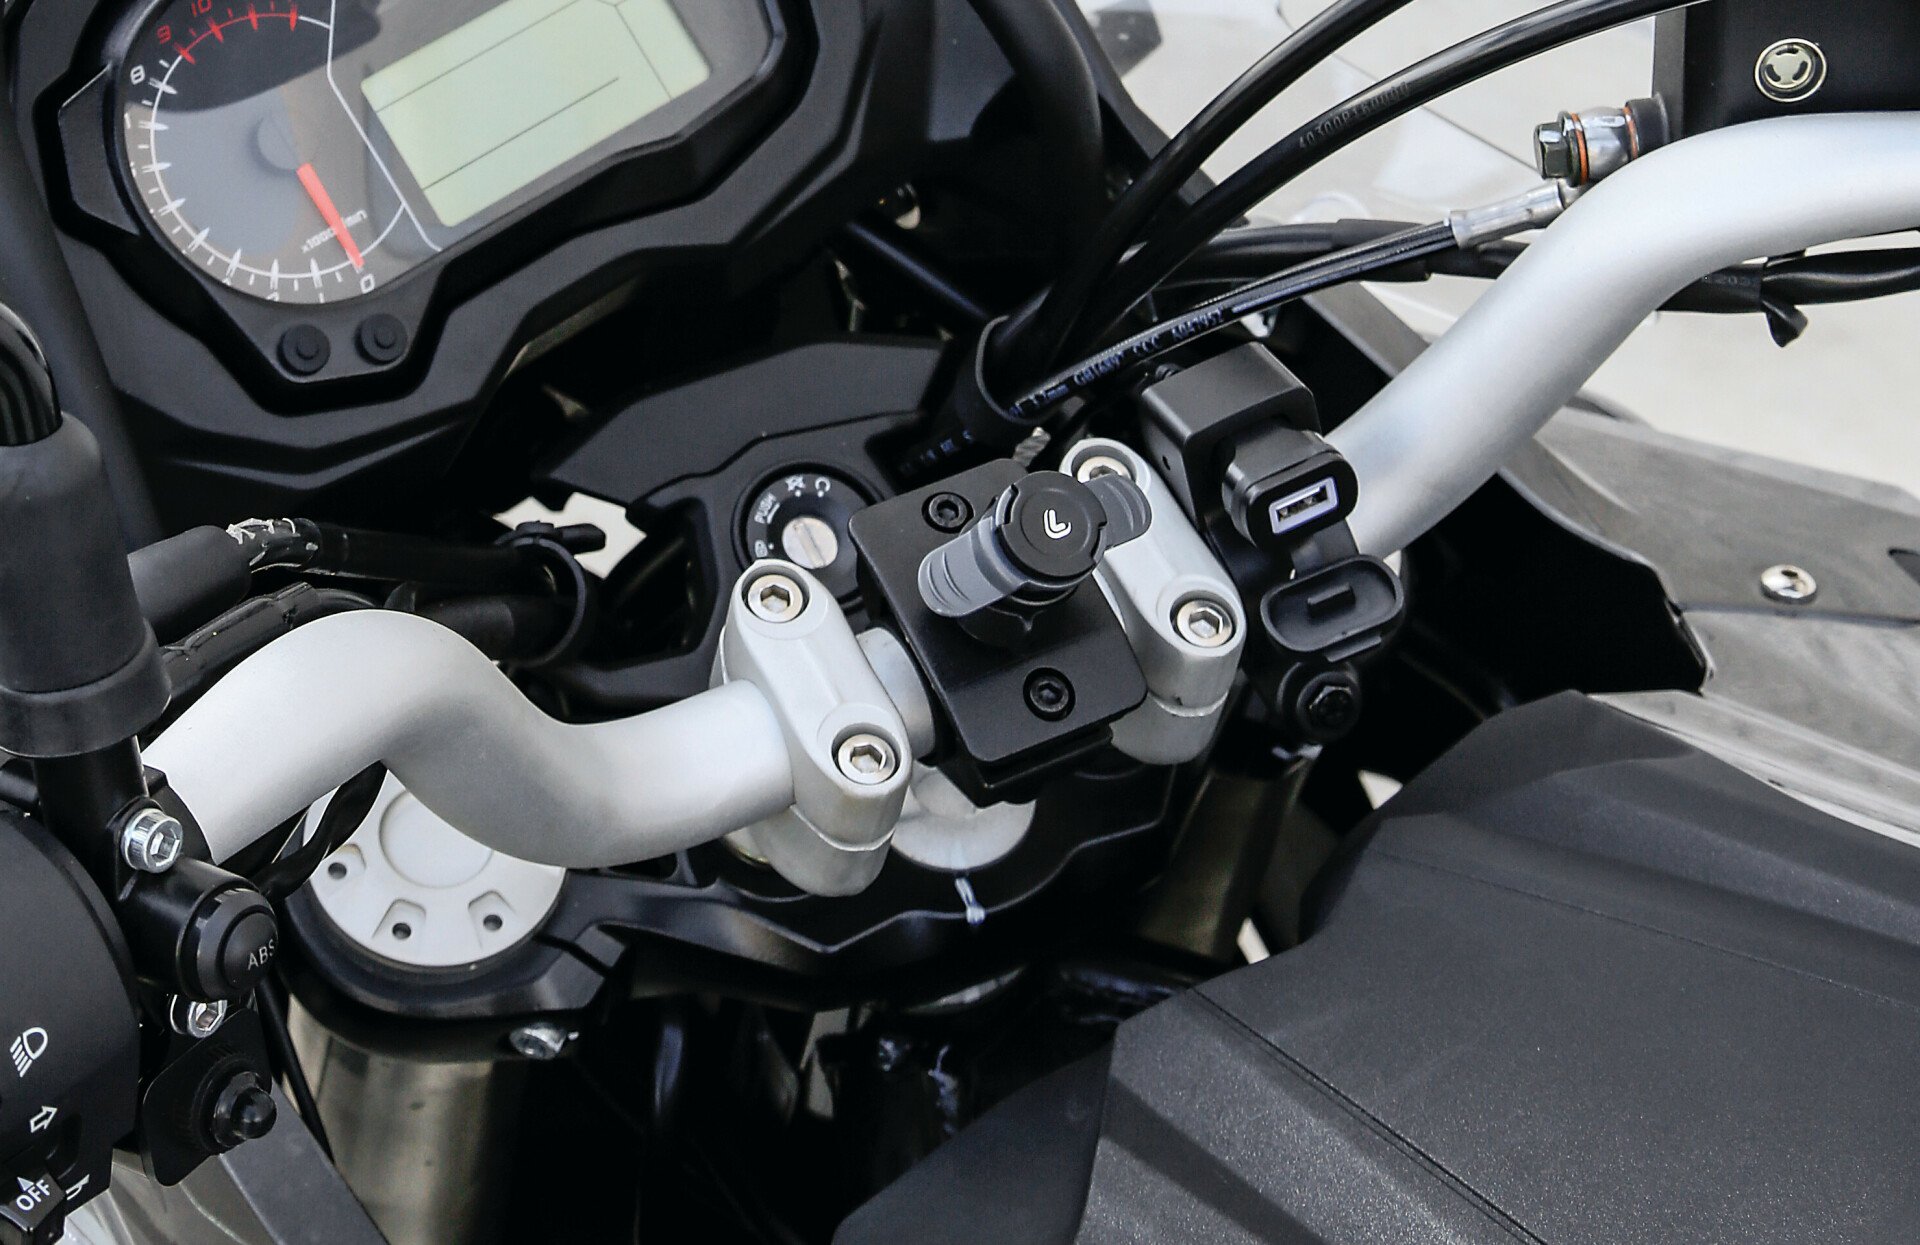 Incarcator motocicleta USB-Fix Tube cu fixare pe ghidon 12/24V - 3000mA thumb